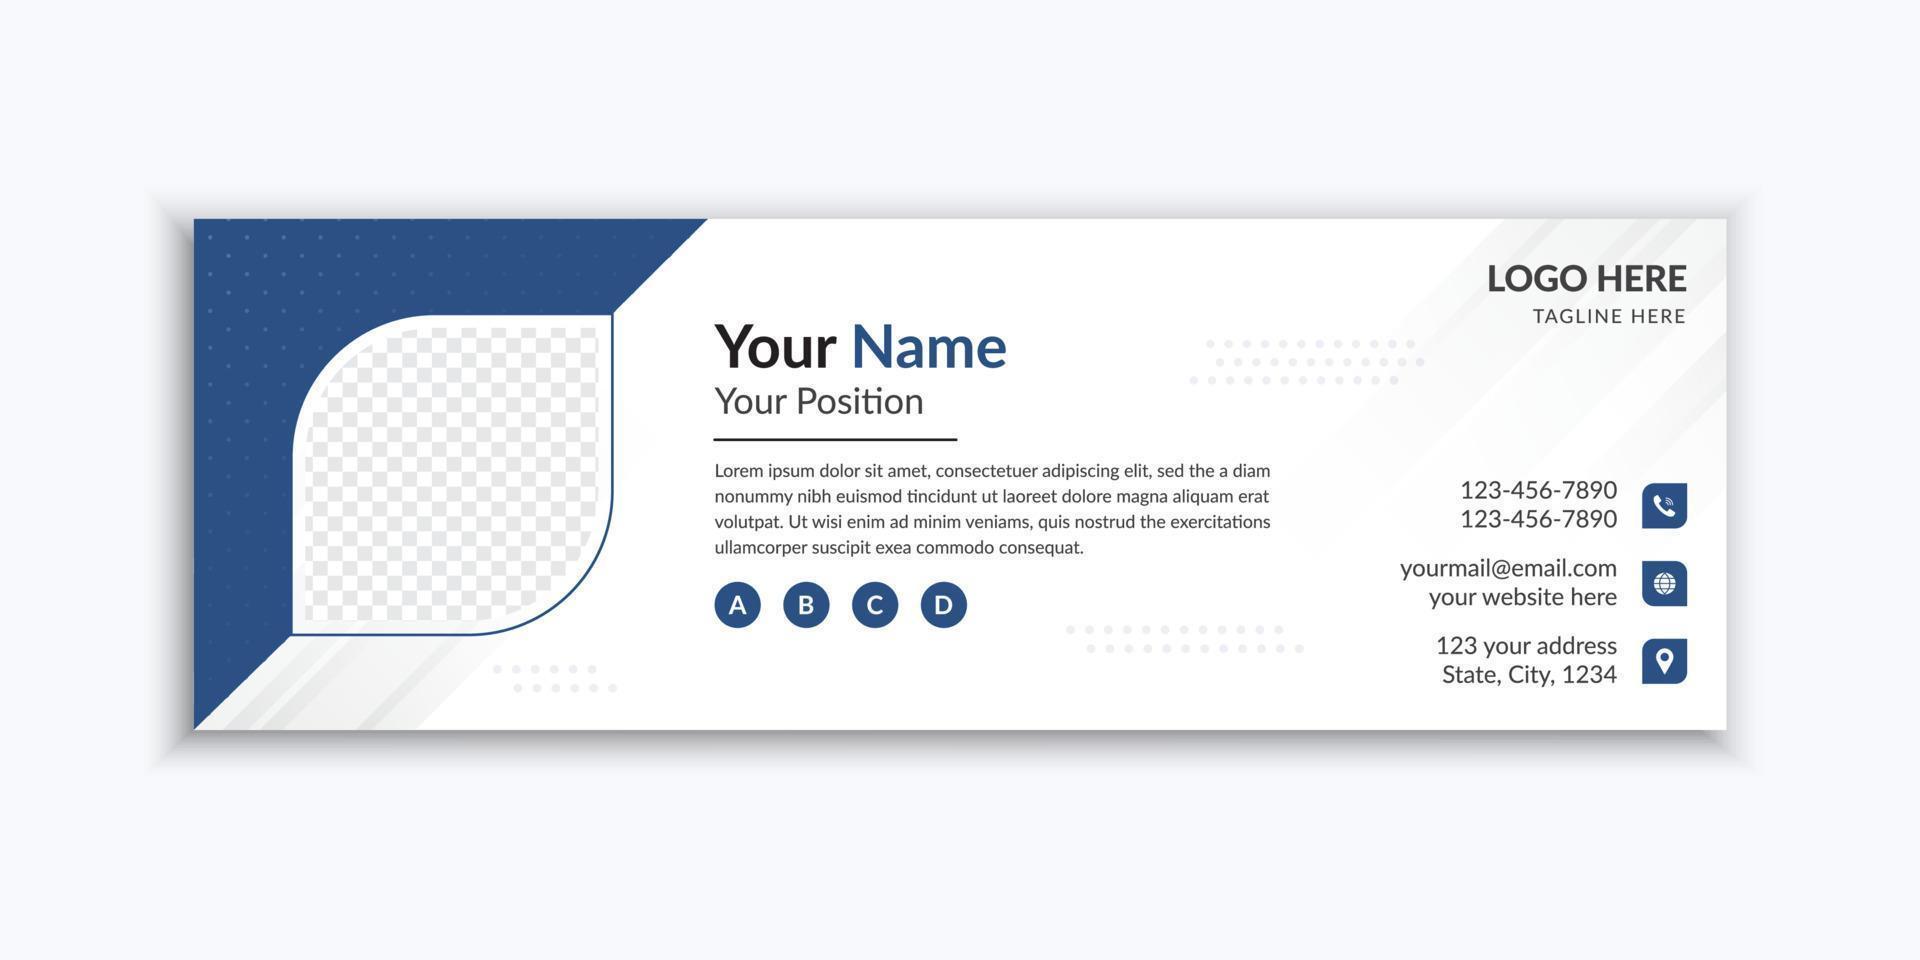 minimalistisk e-signaturmall och bannerdesign för sociala medier vektor